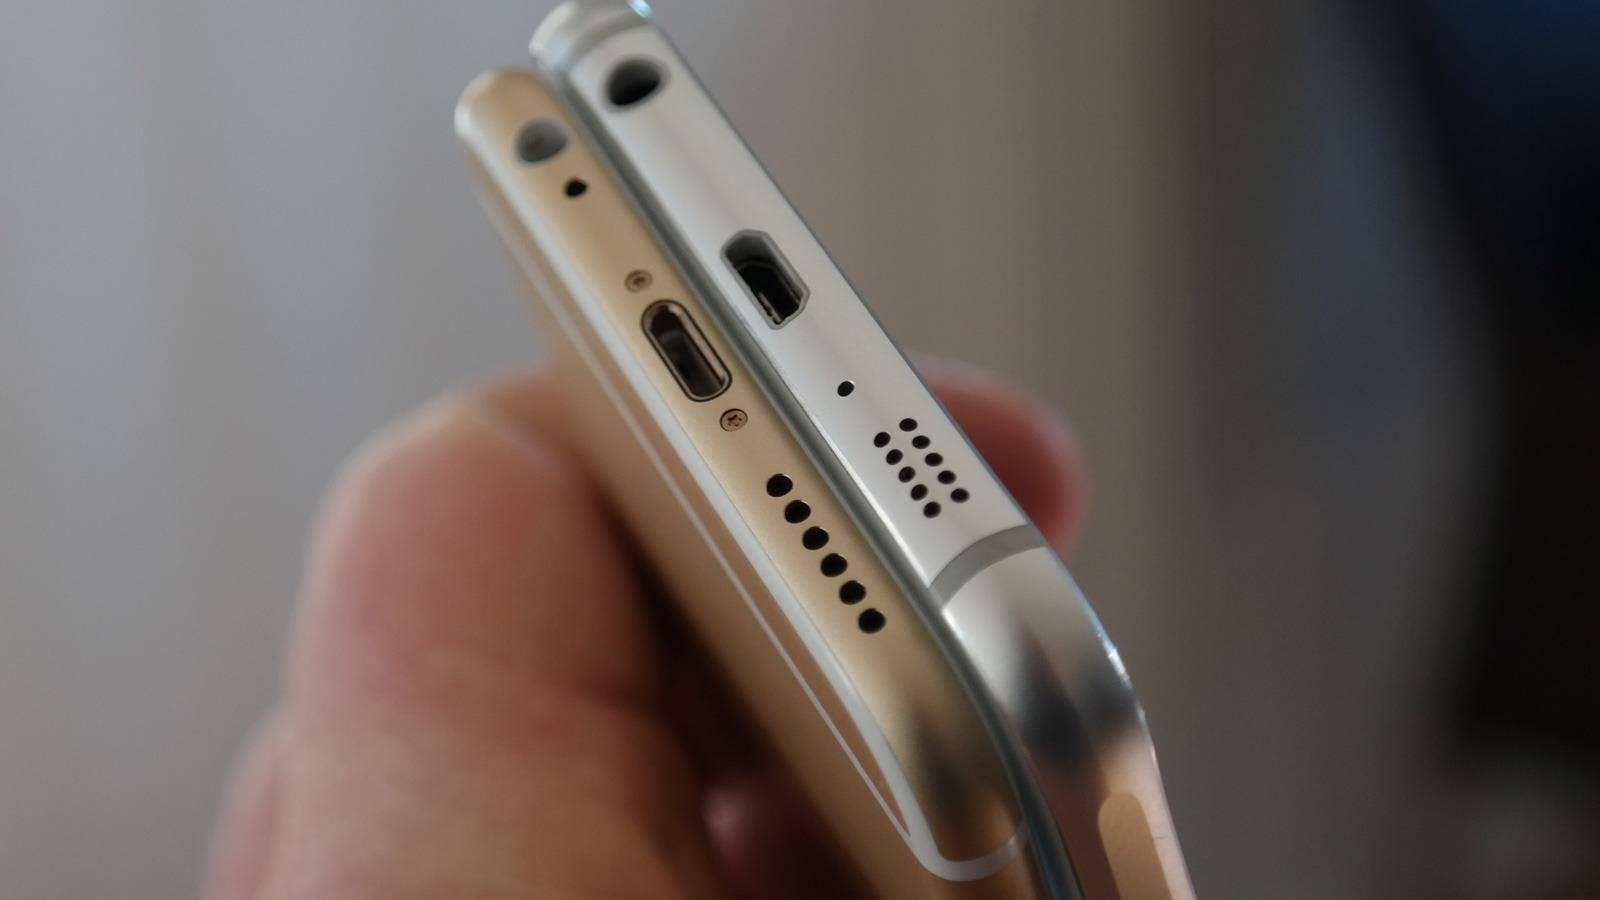 Noen mener Galaxy S6 er litt for lik iPhone 6, her i en gyllen variant. Foto: Espen Irwing Swang, Tek.no